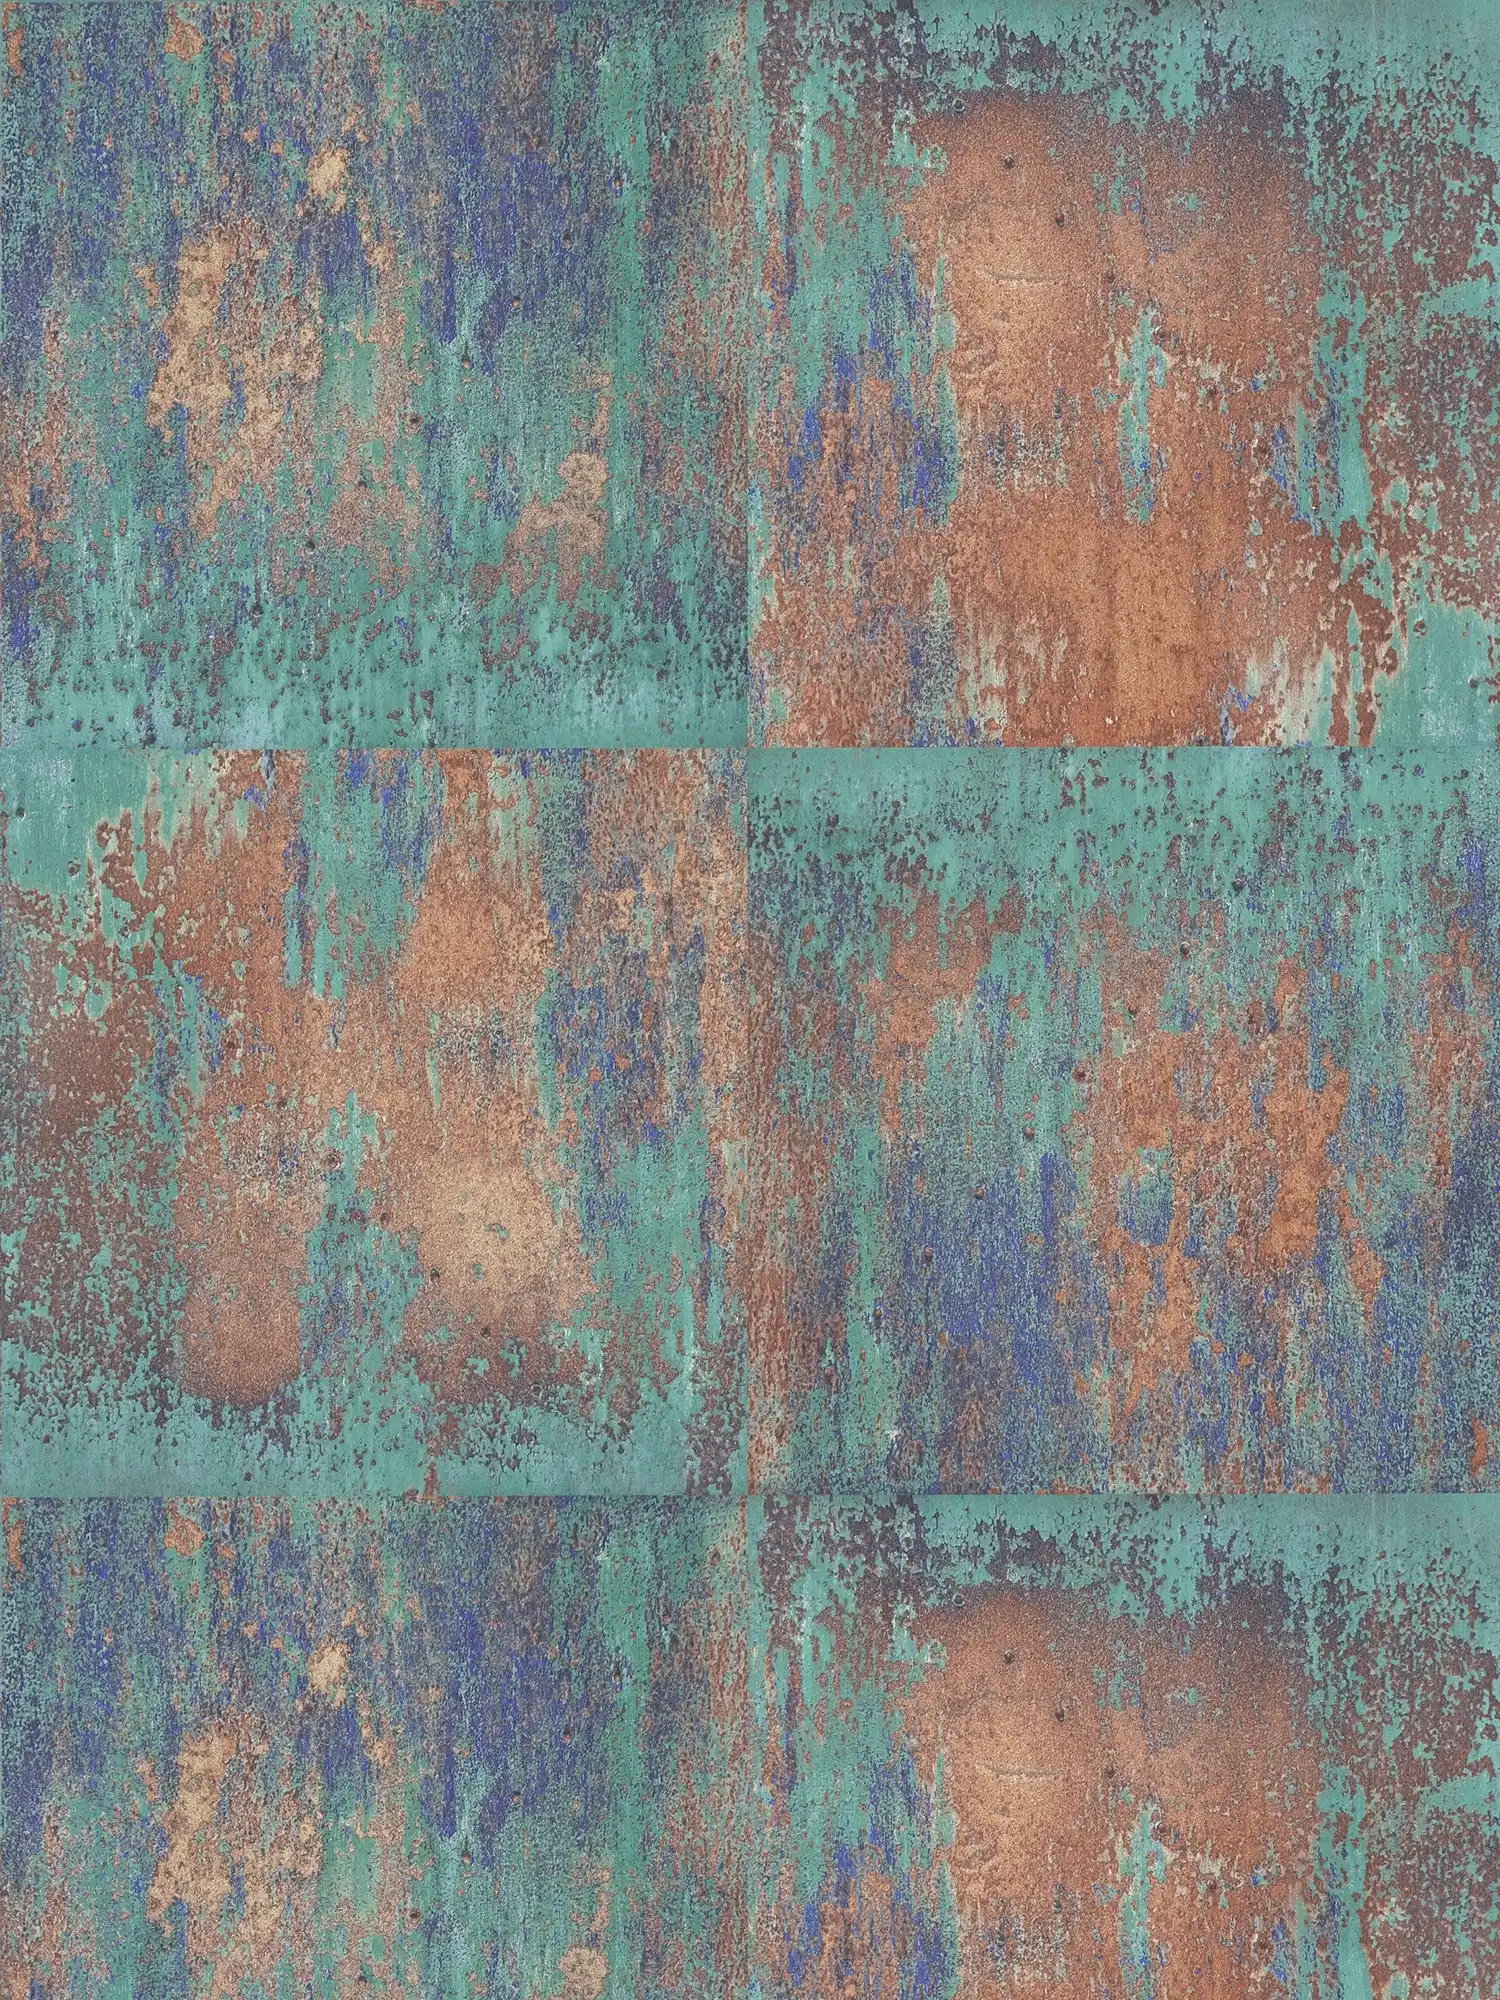 Self-adhesive wallpaper | rust look design rustic metal - blue, brown
